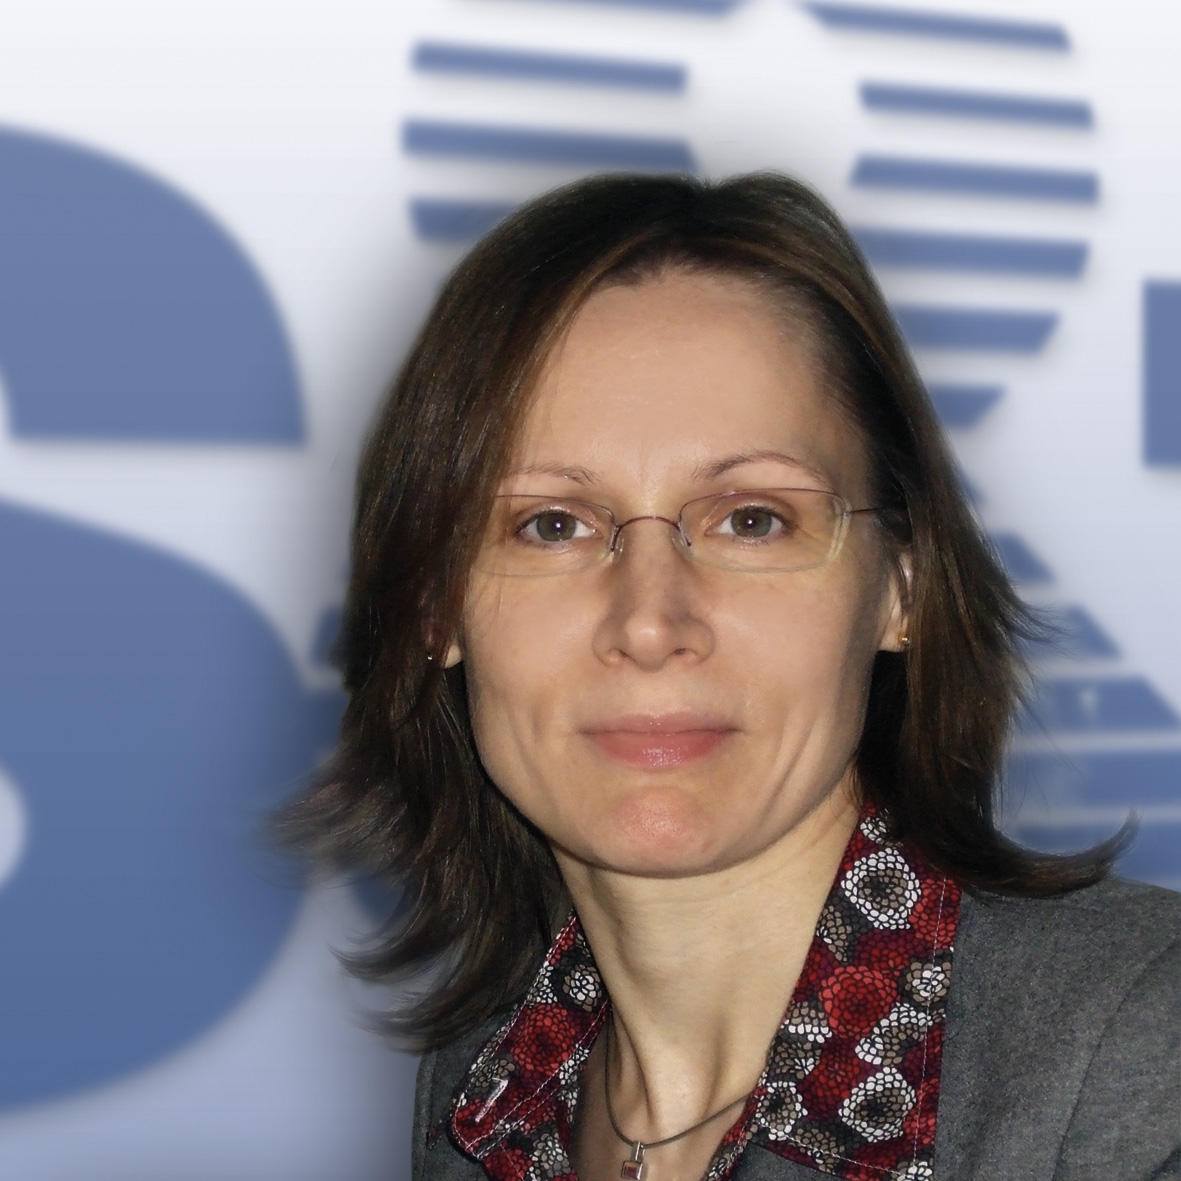 Elisabeth Polanyi leitet den Bereich Servicemanagement bei S&T DACH